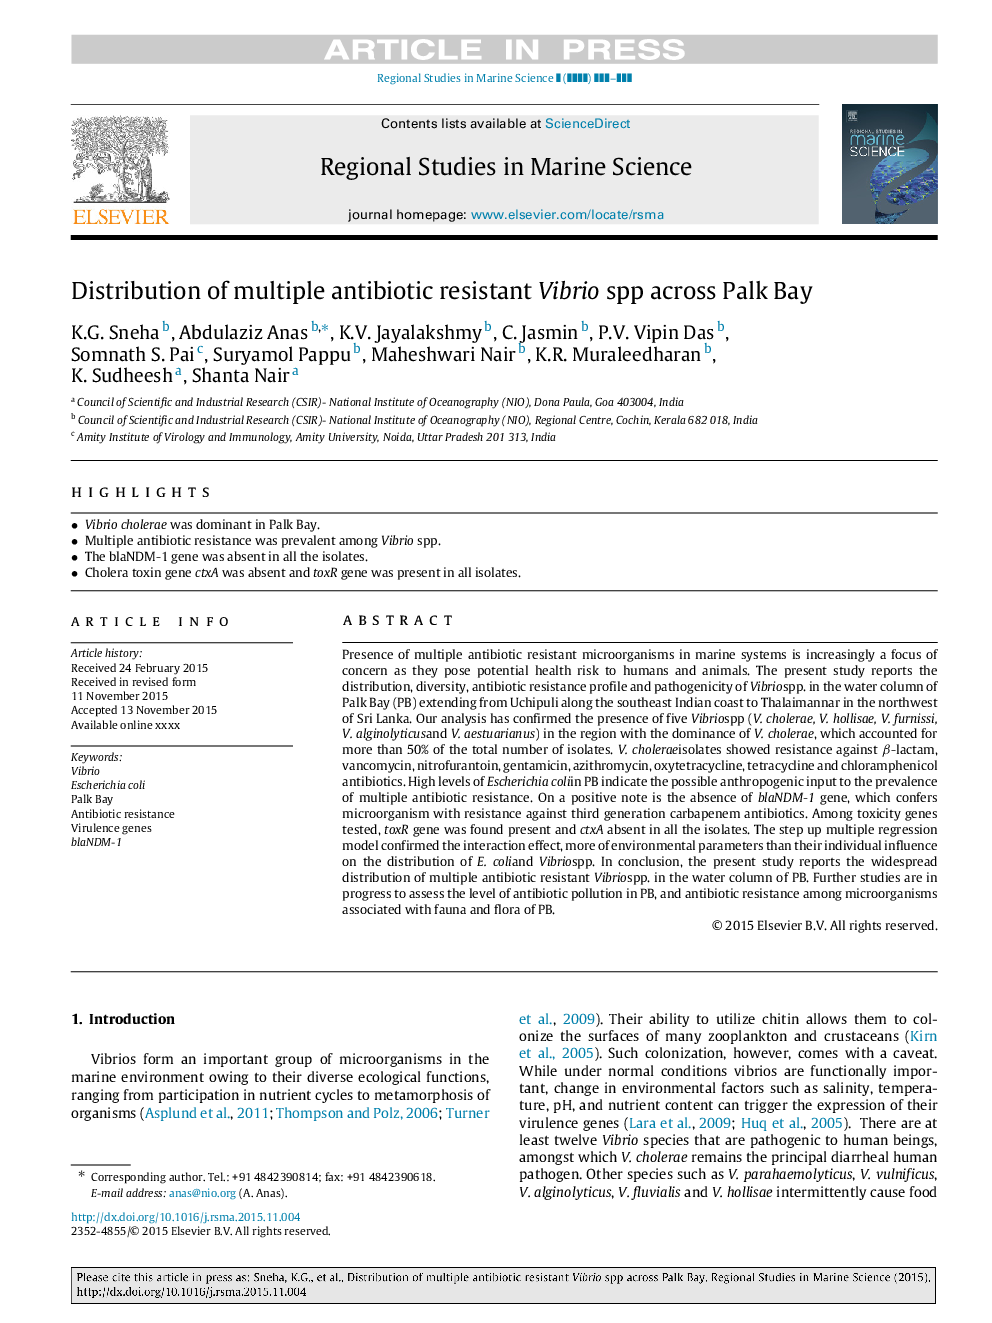 توزیع علفهای هرز ویبریو مقاوم در برابر آنتی بیوتیک در خلیج پالک 